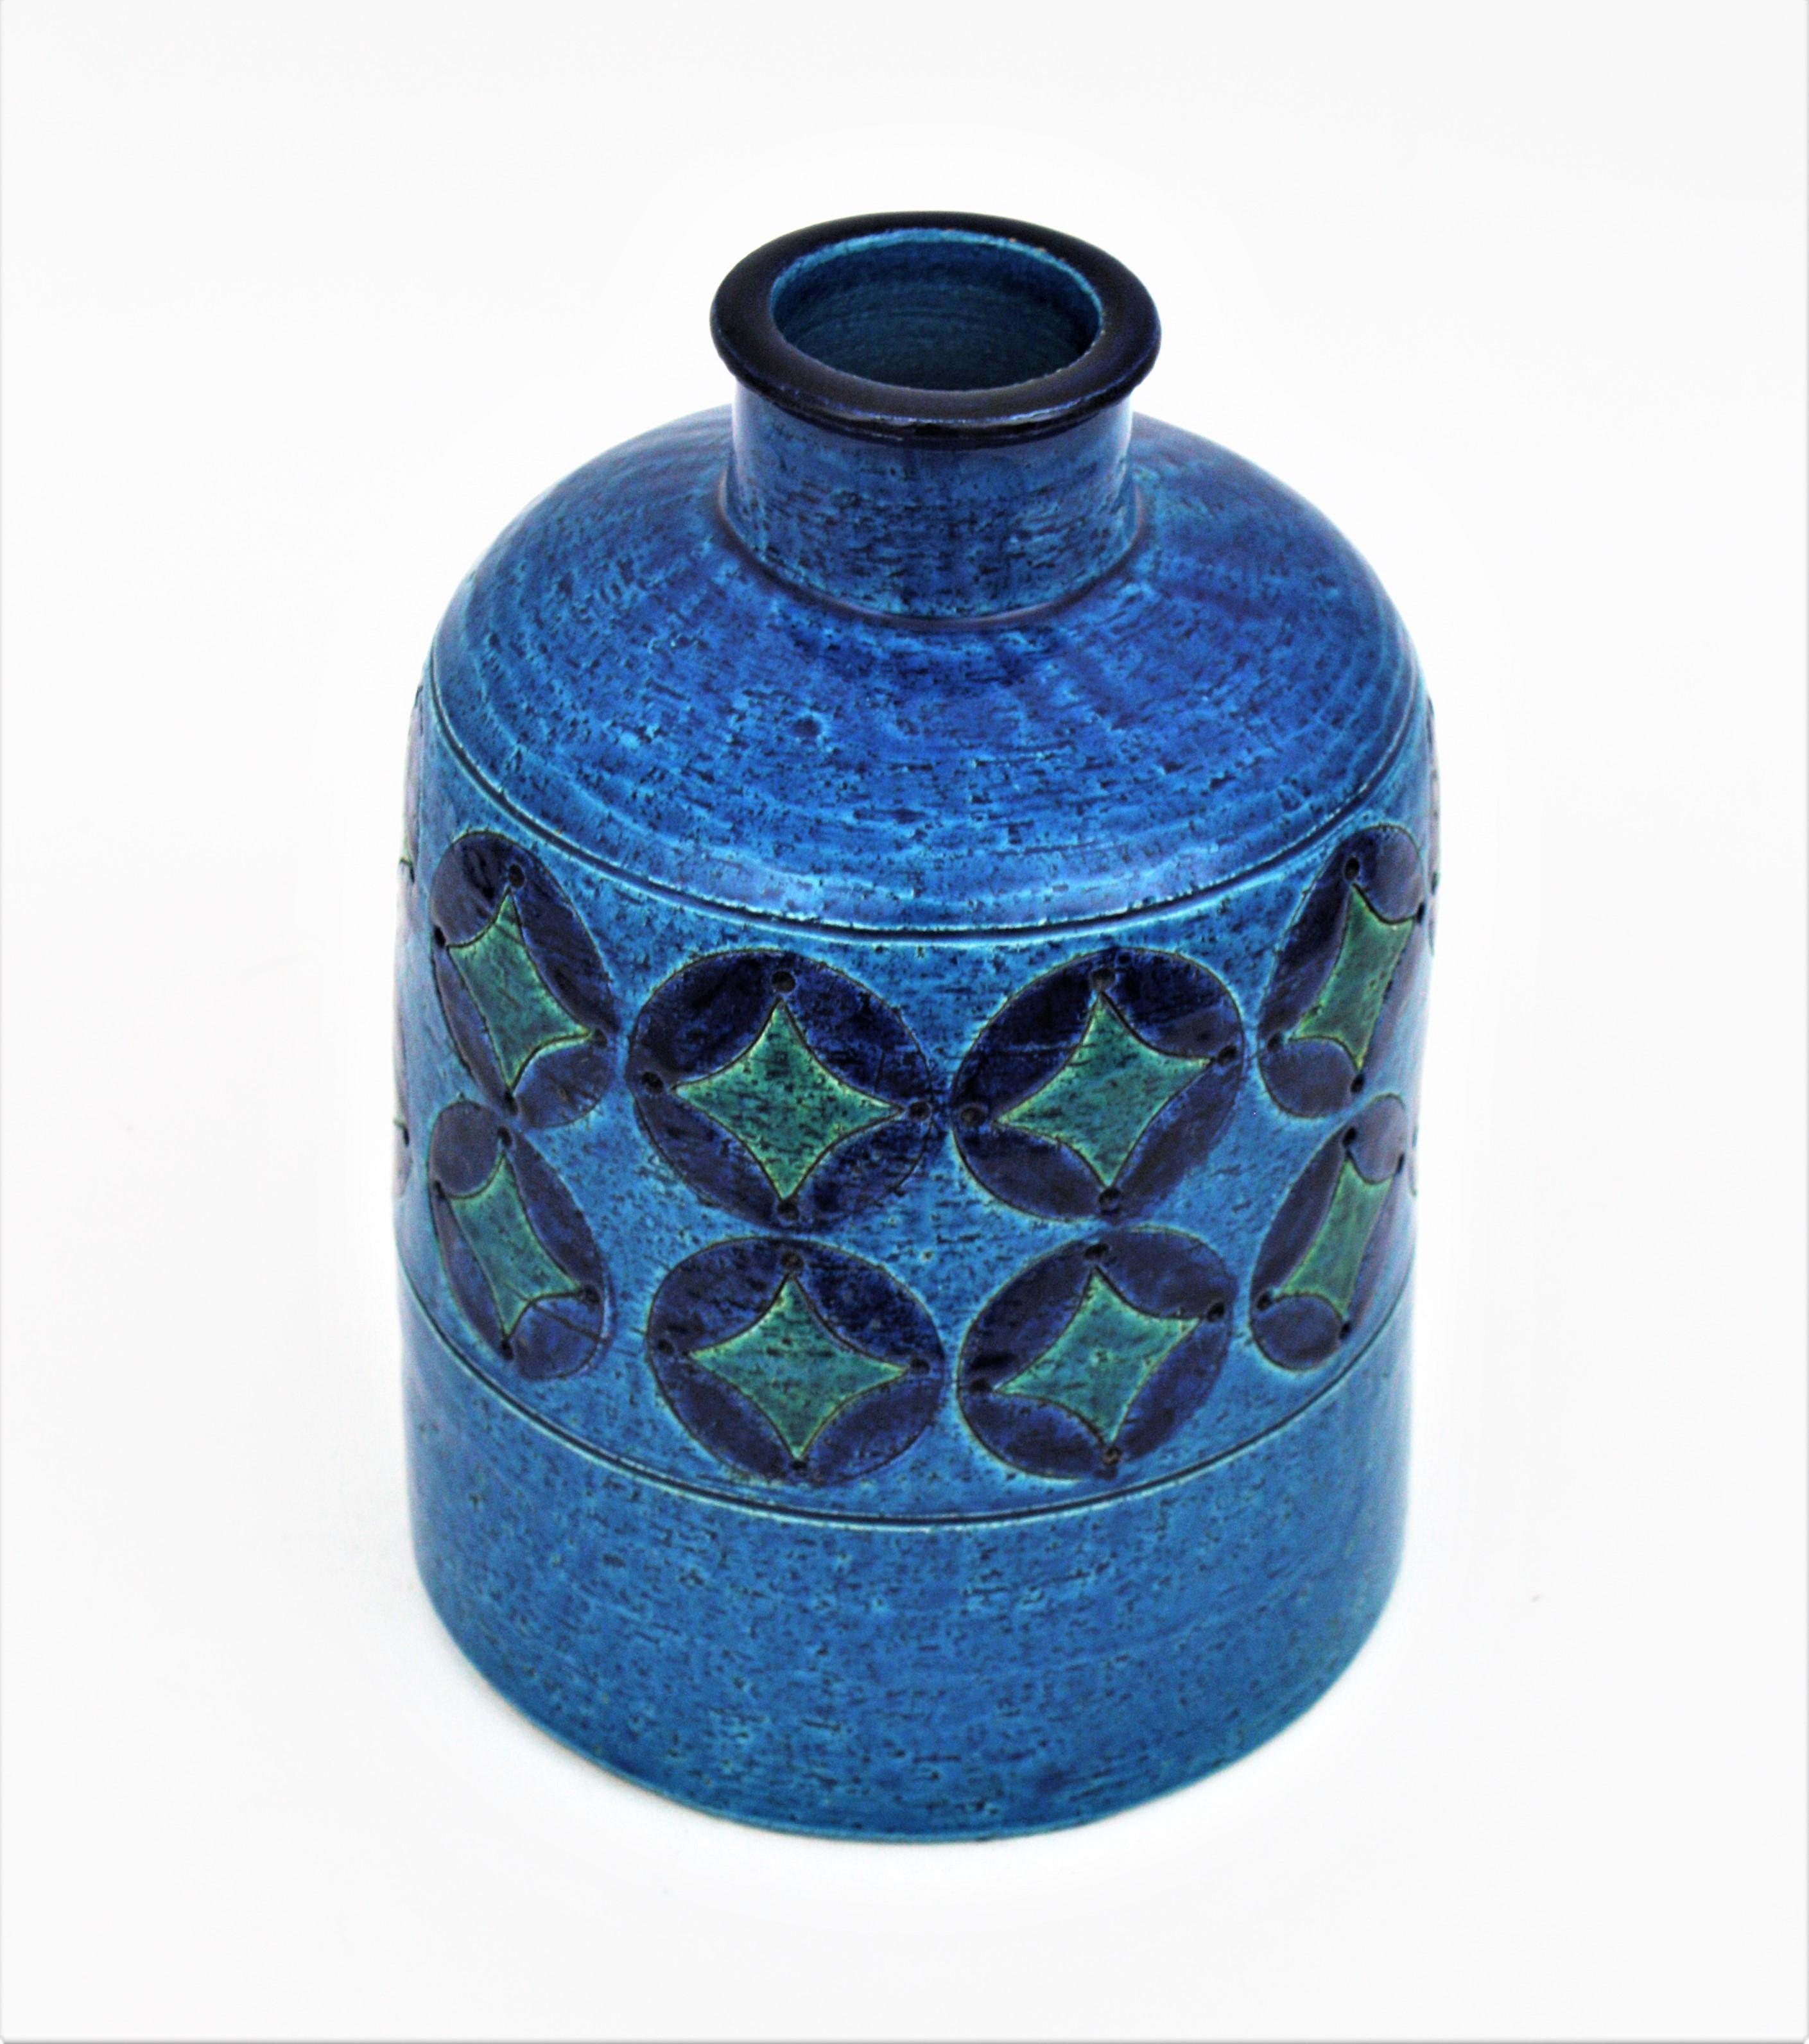 Glazed Bitossi Aldo Londi Blue Ceramic Large Bottle Vase with Circles & Rhombus Motif For Sale